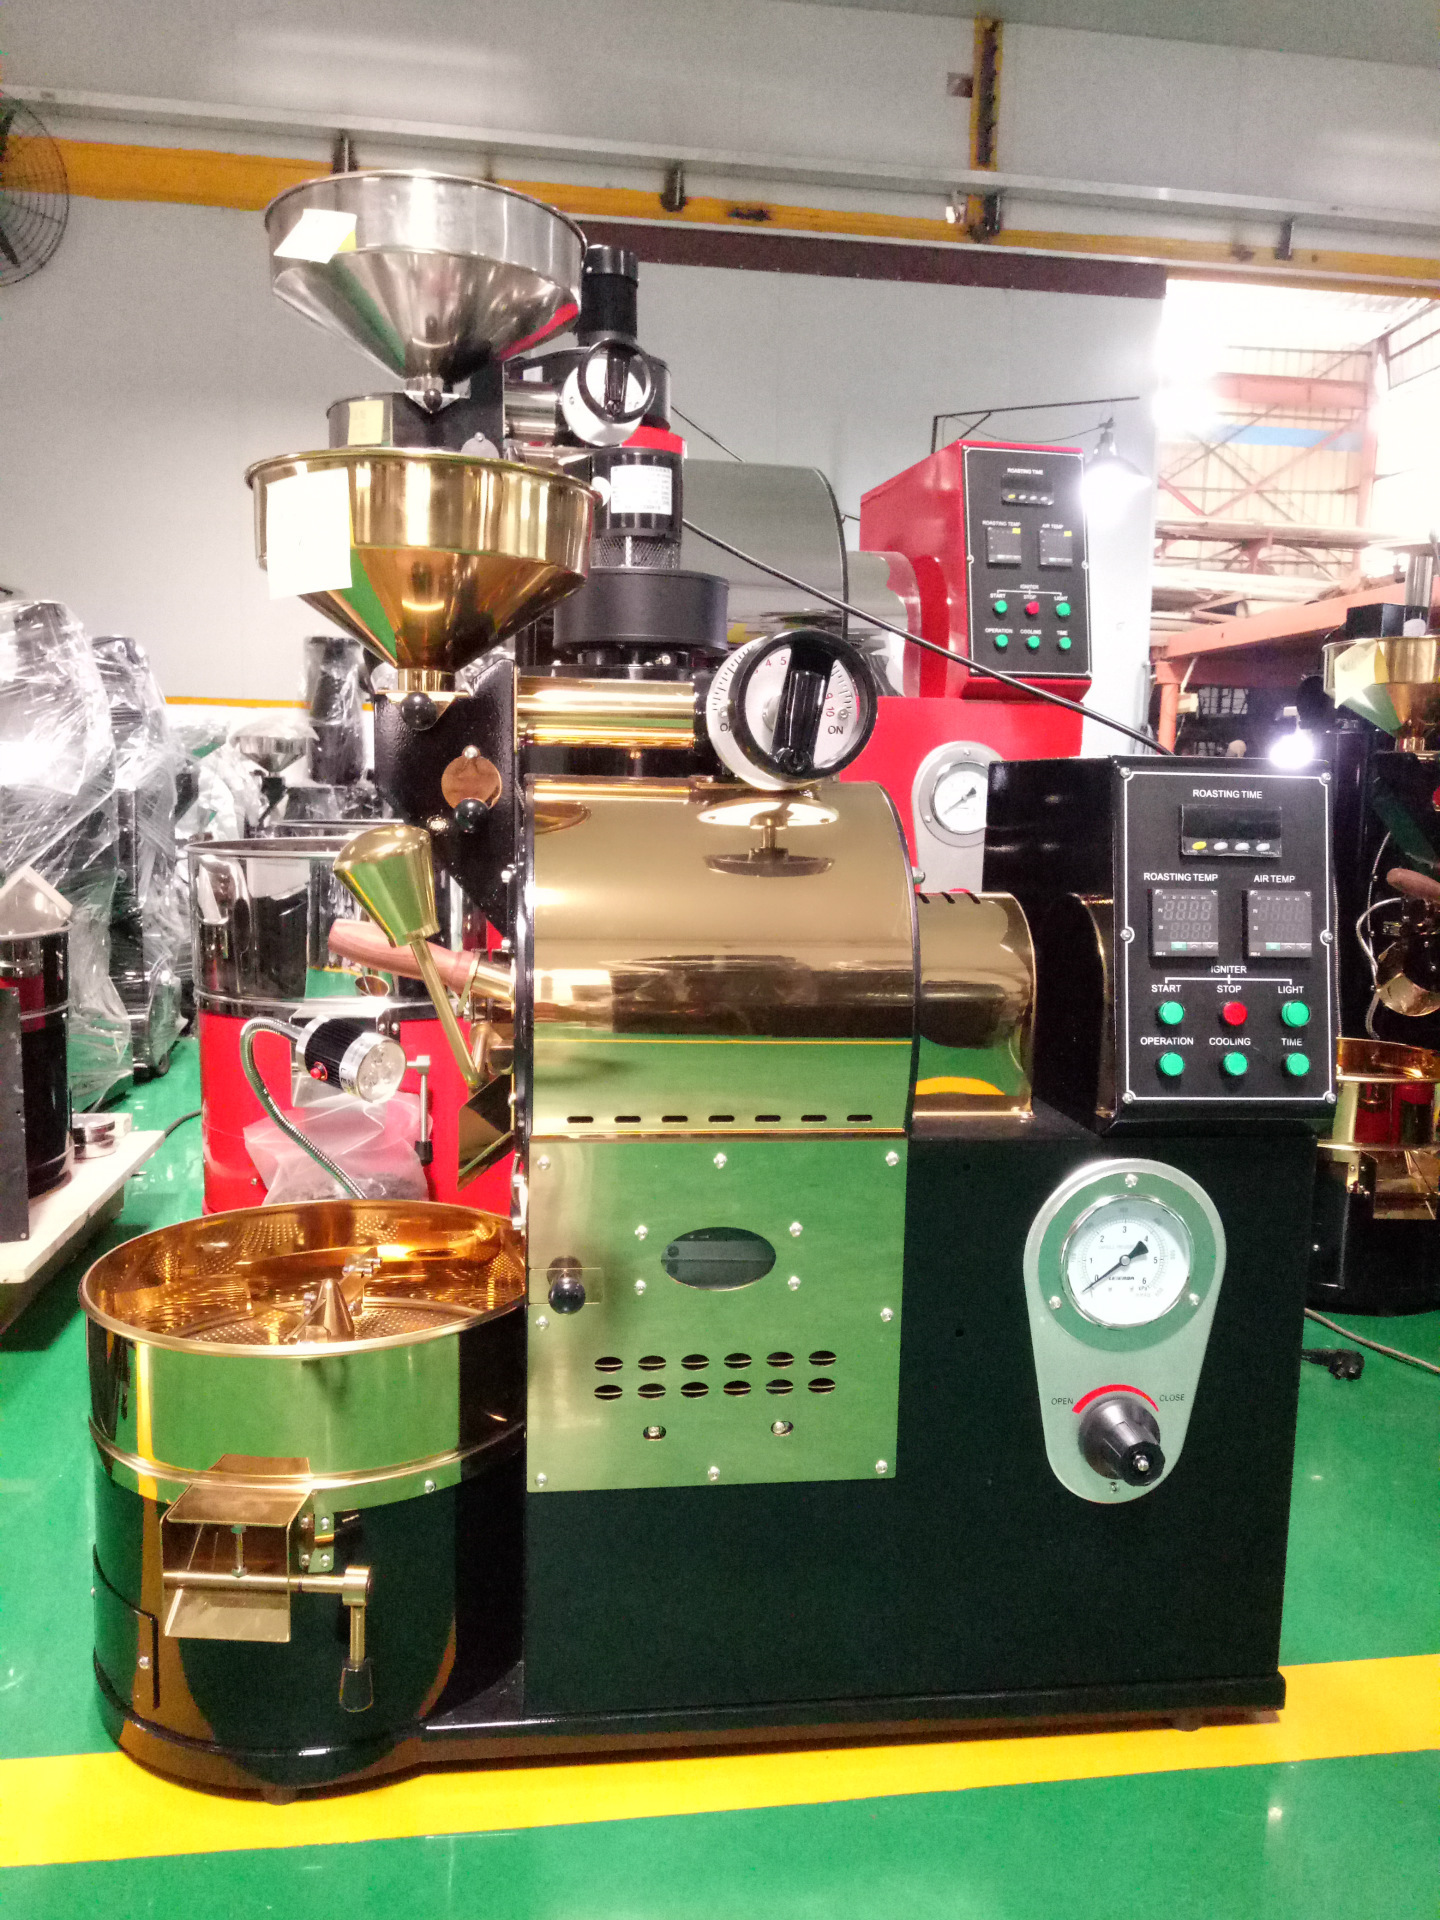 厂家直销咖啡烘焙机 商用小型咖啡豆烘焙机 食品机械 1KG烘焙机